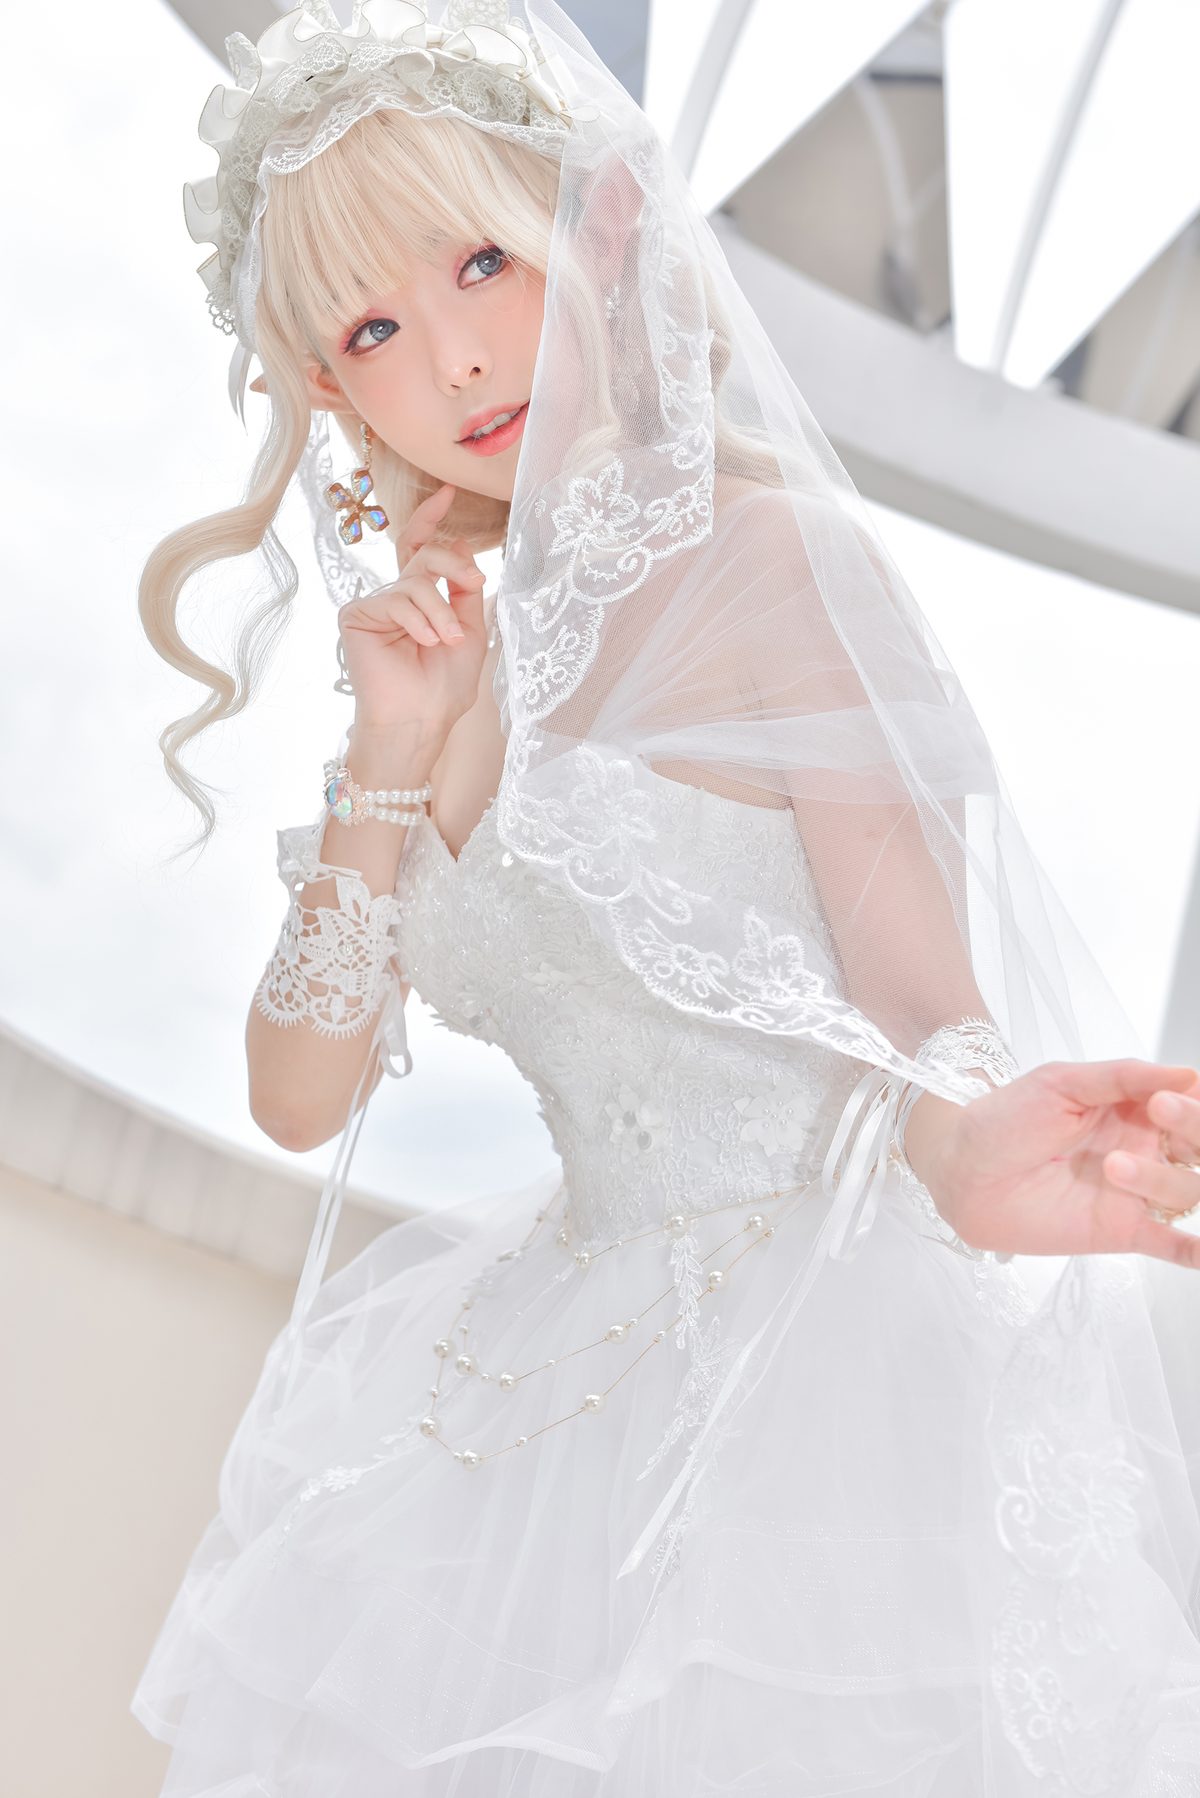 Coser@Ely_eee ElyEE子 Bride And Lingerie 0019 9997983398.jpg